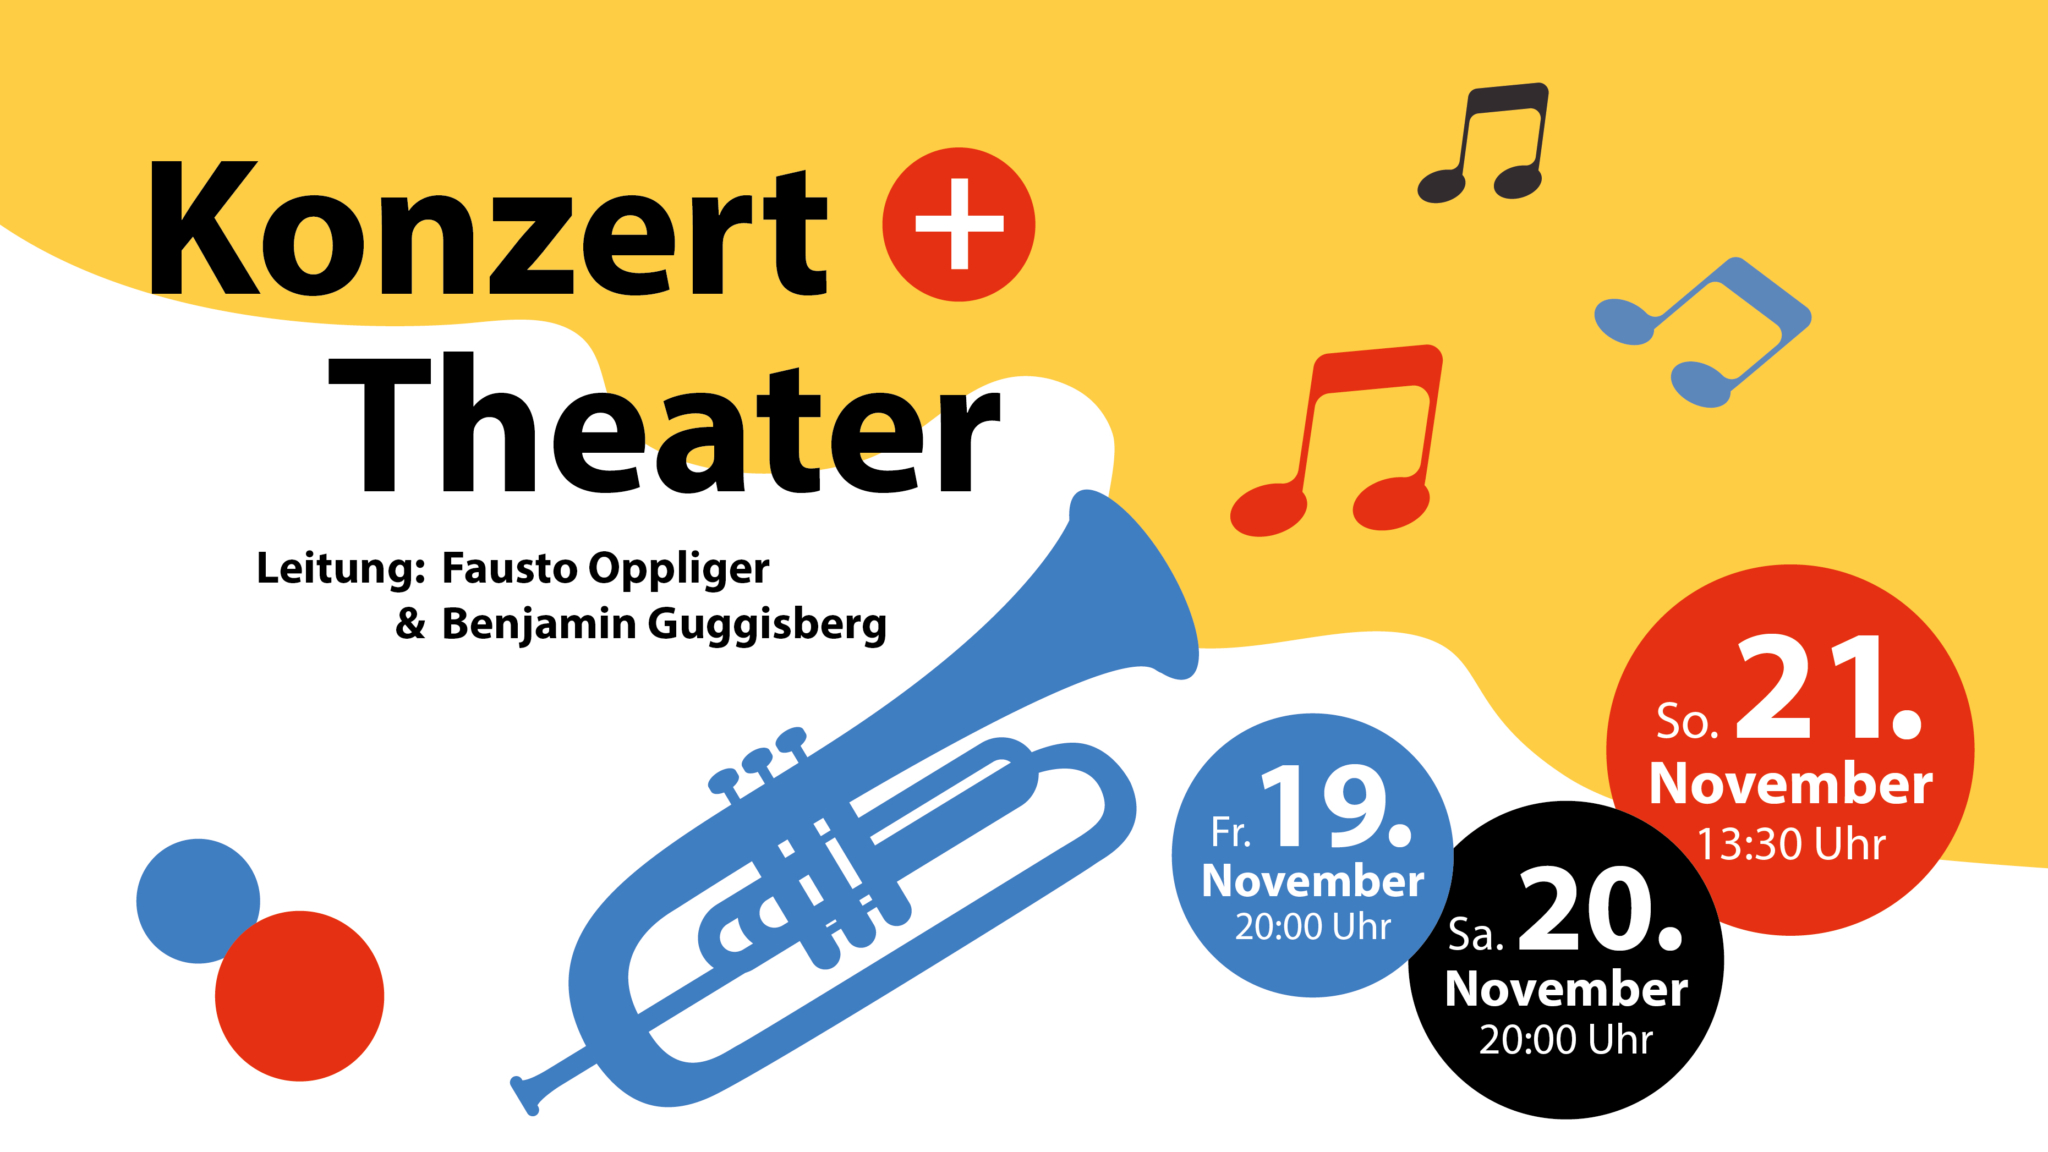 Konzert + Theater 2021